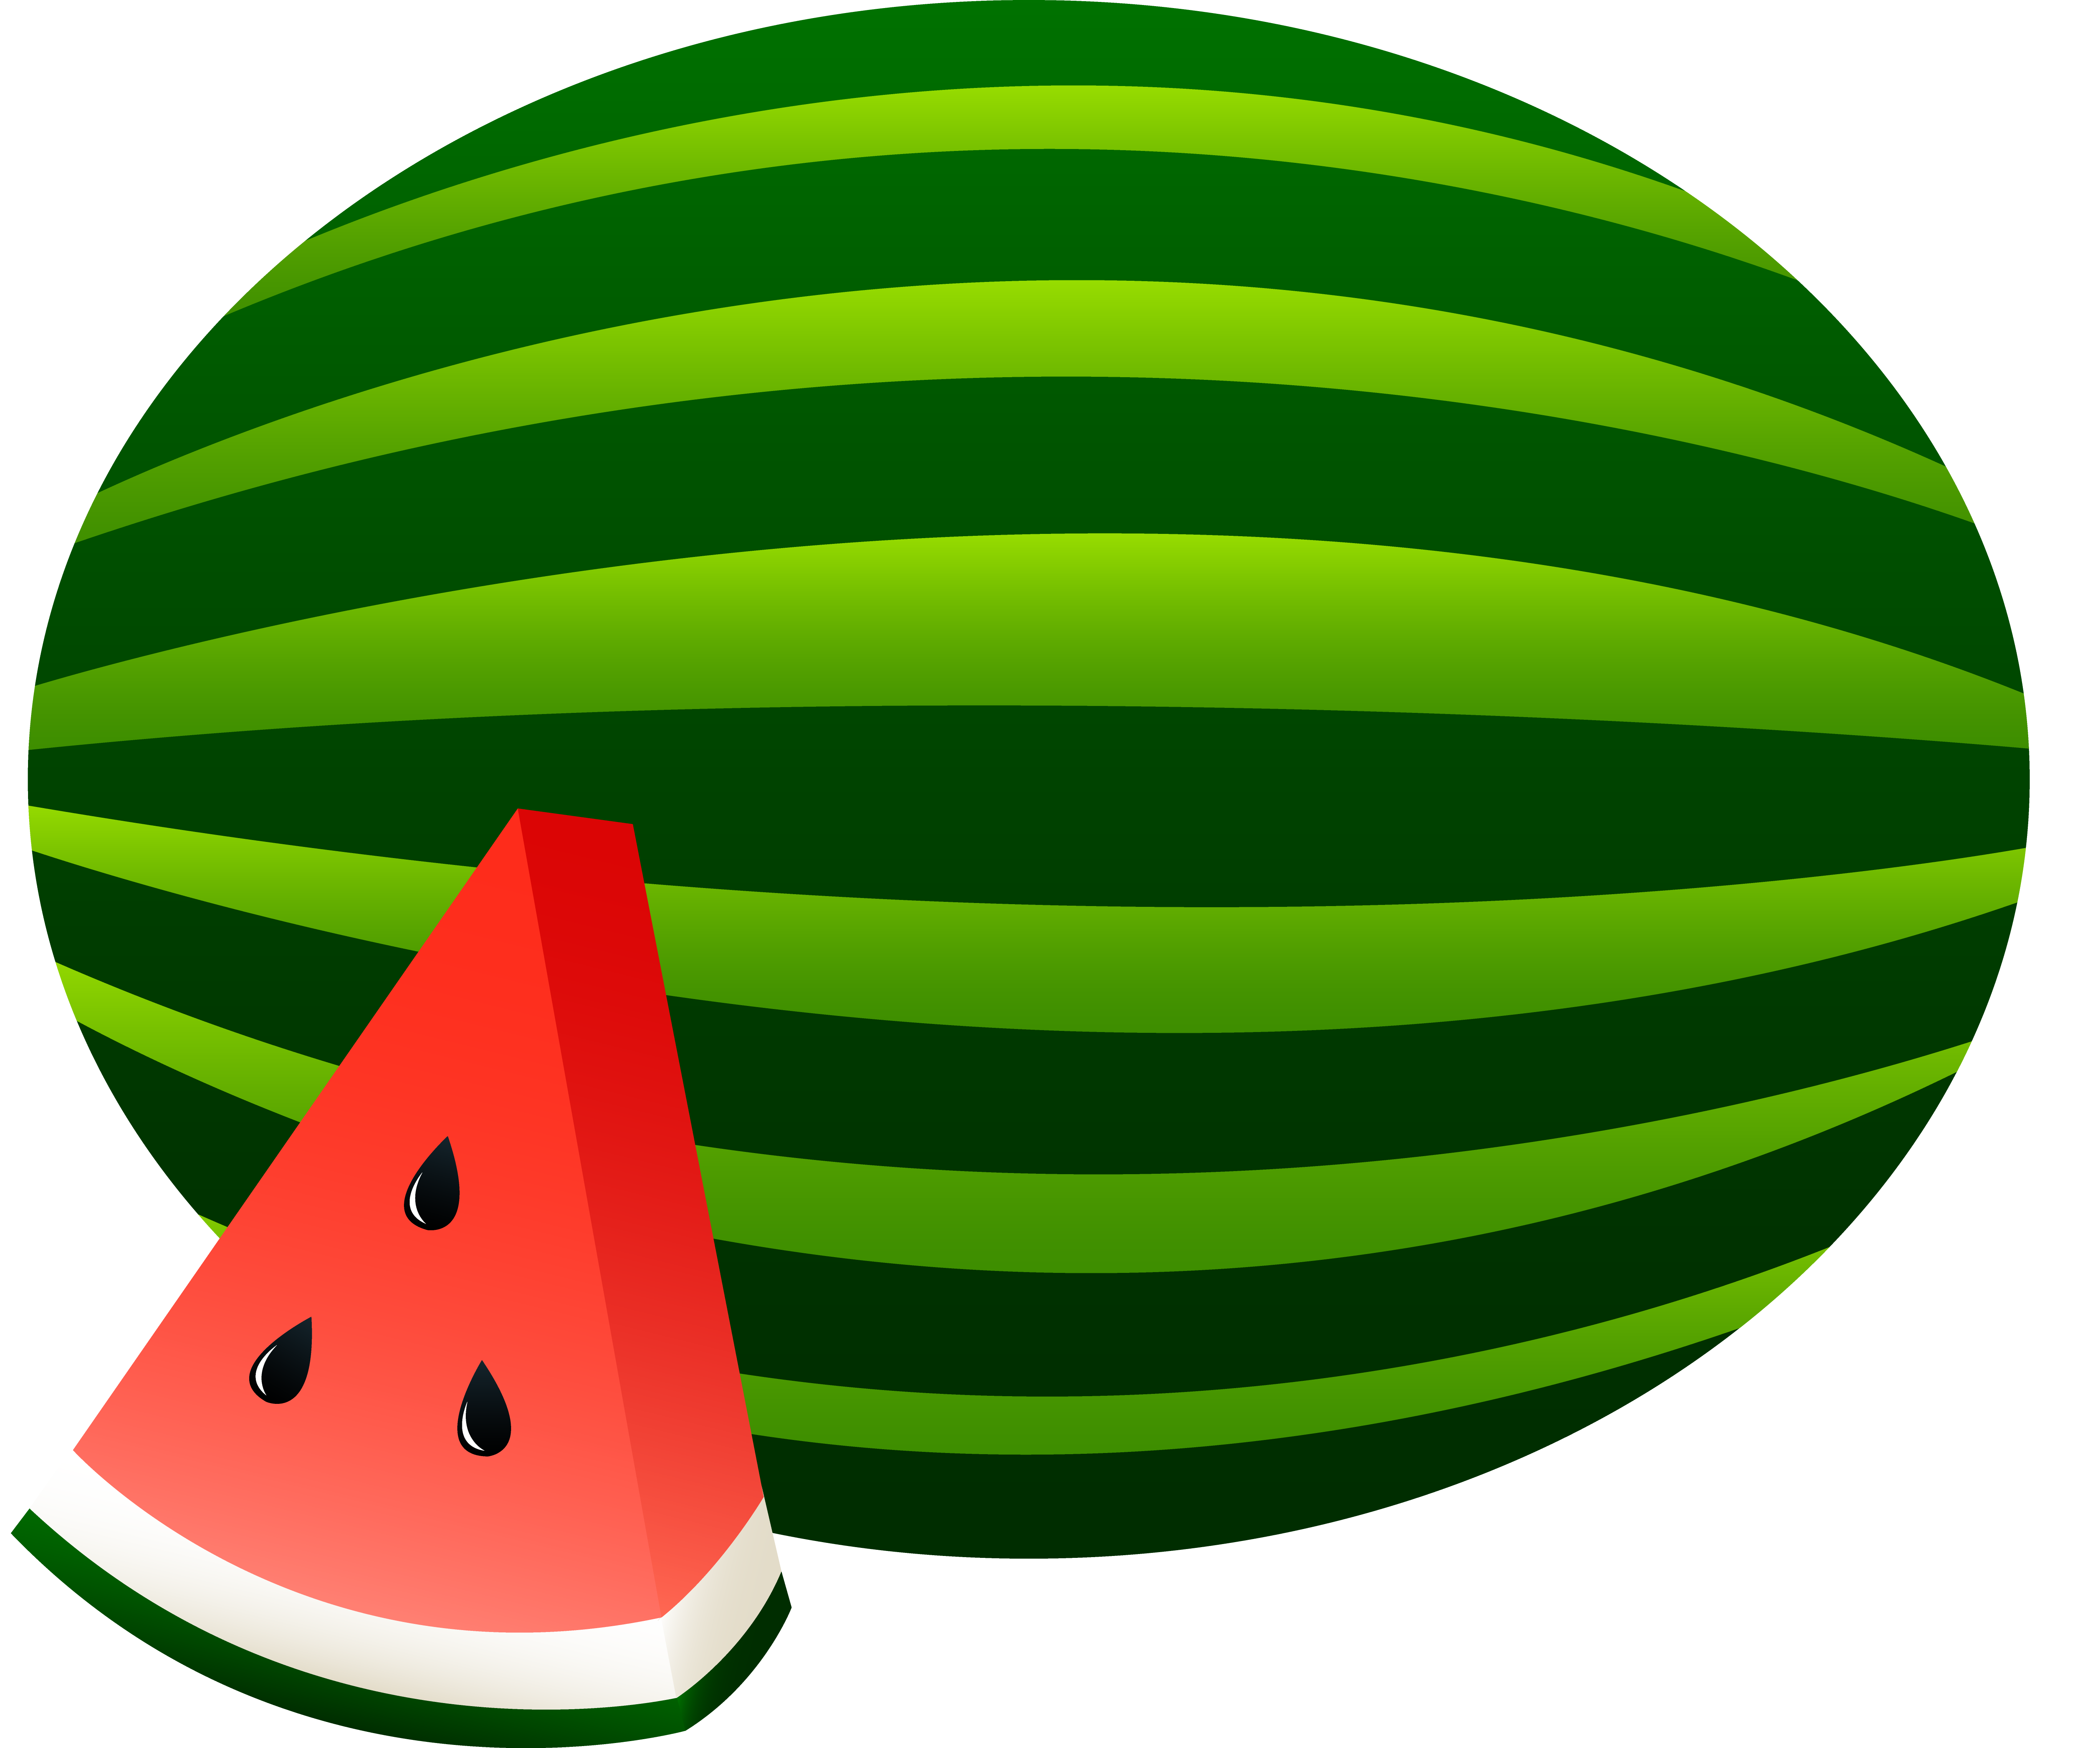 watermelon-clip-art-cliparts-co